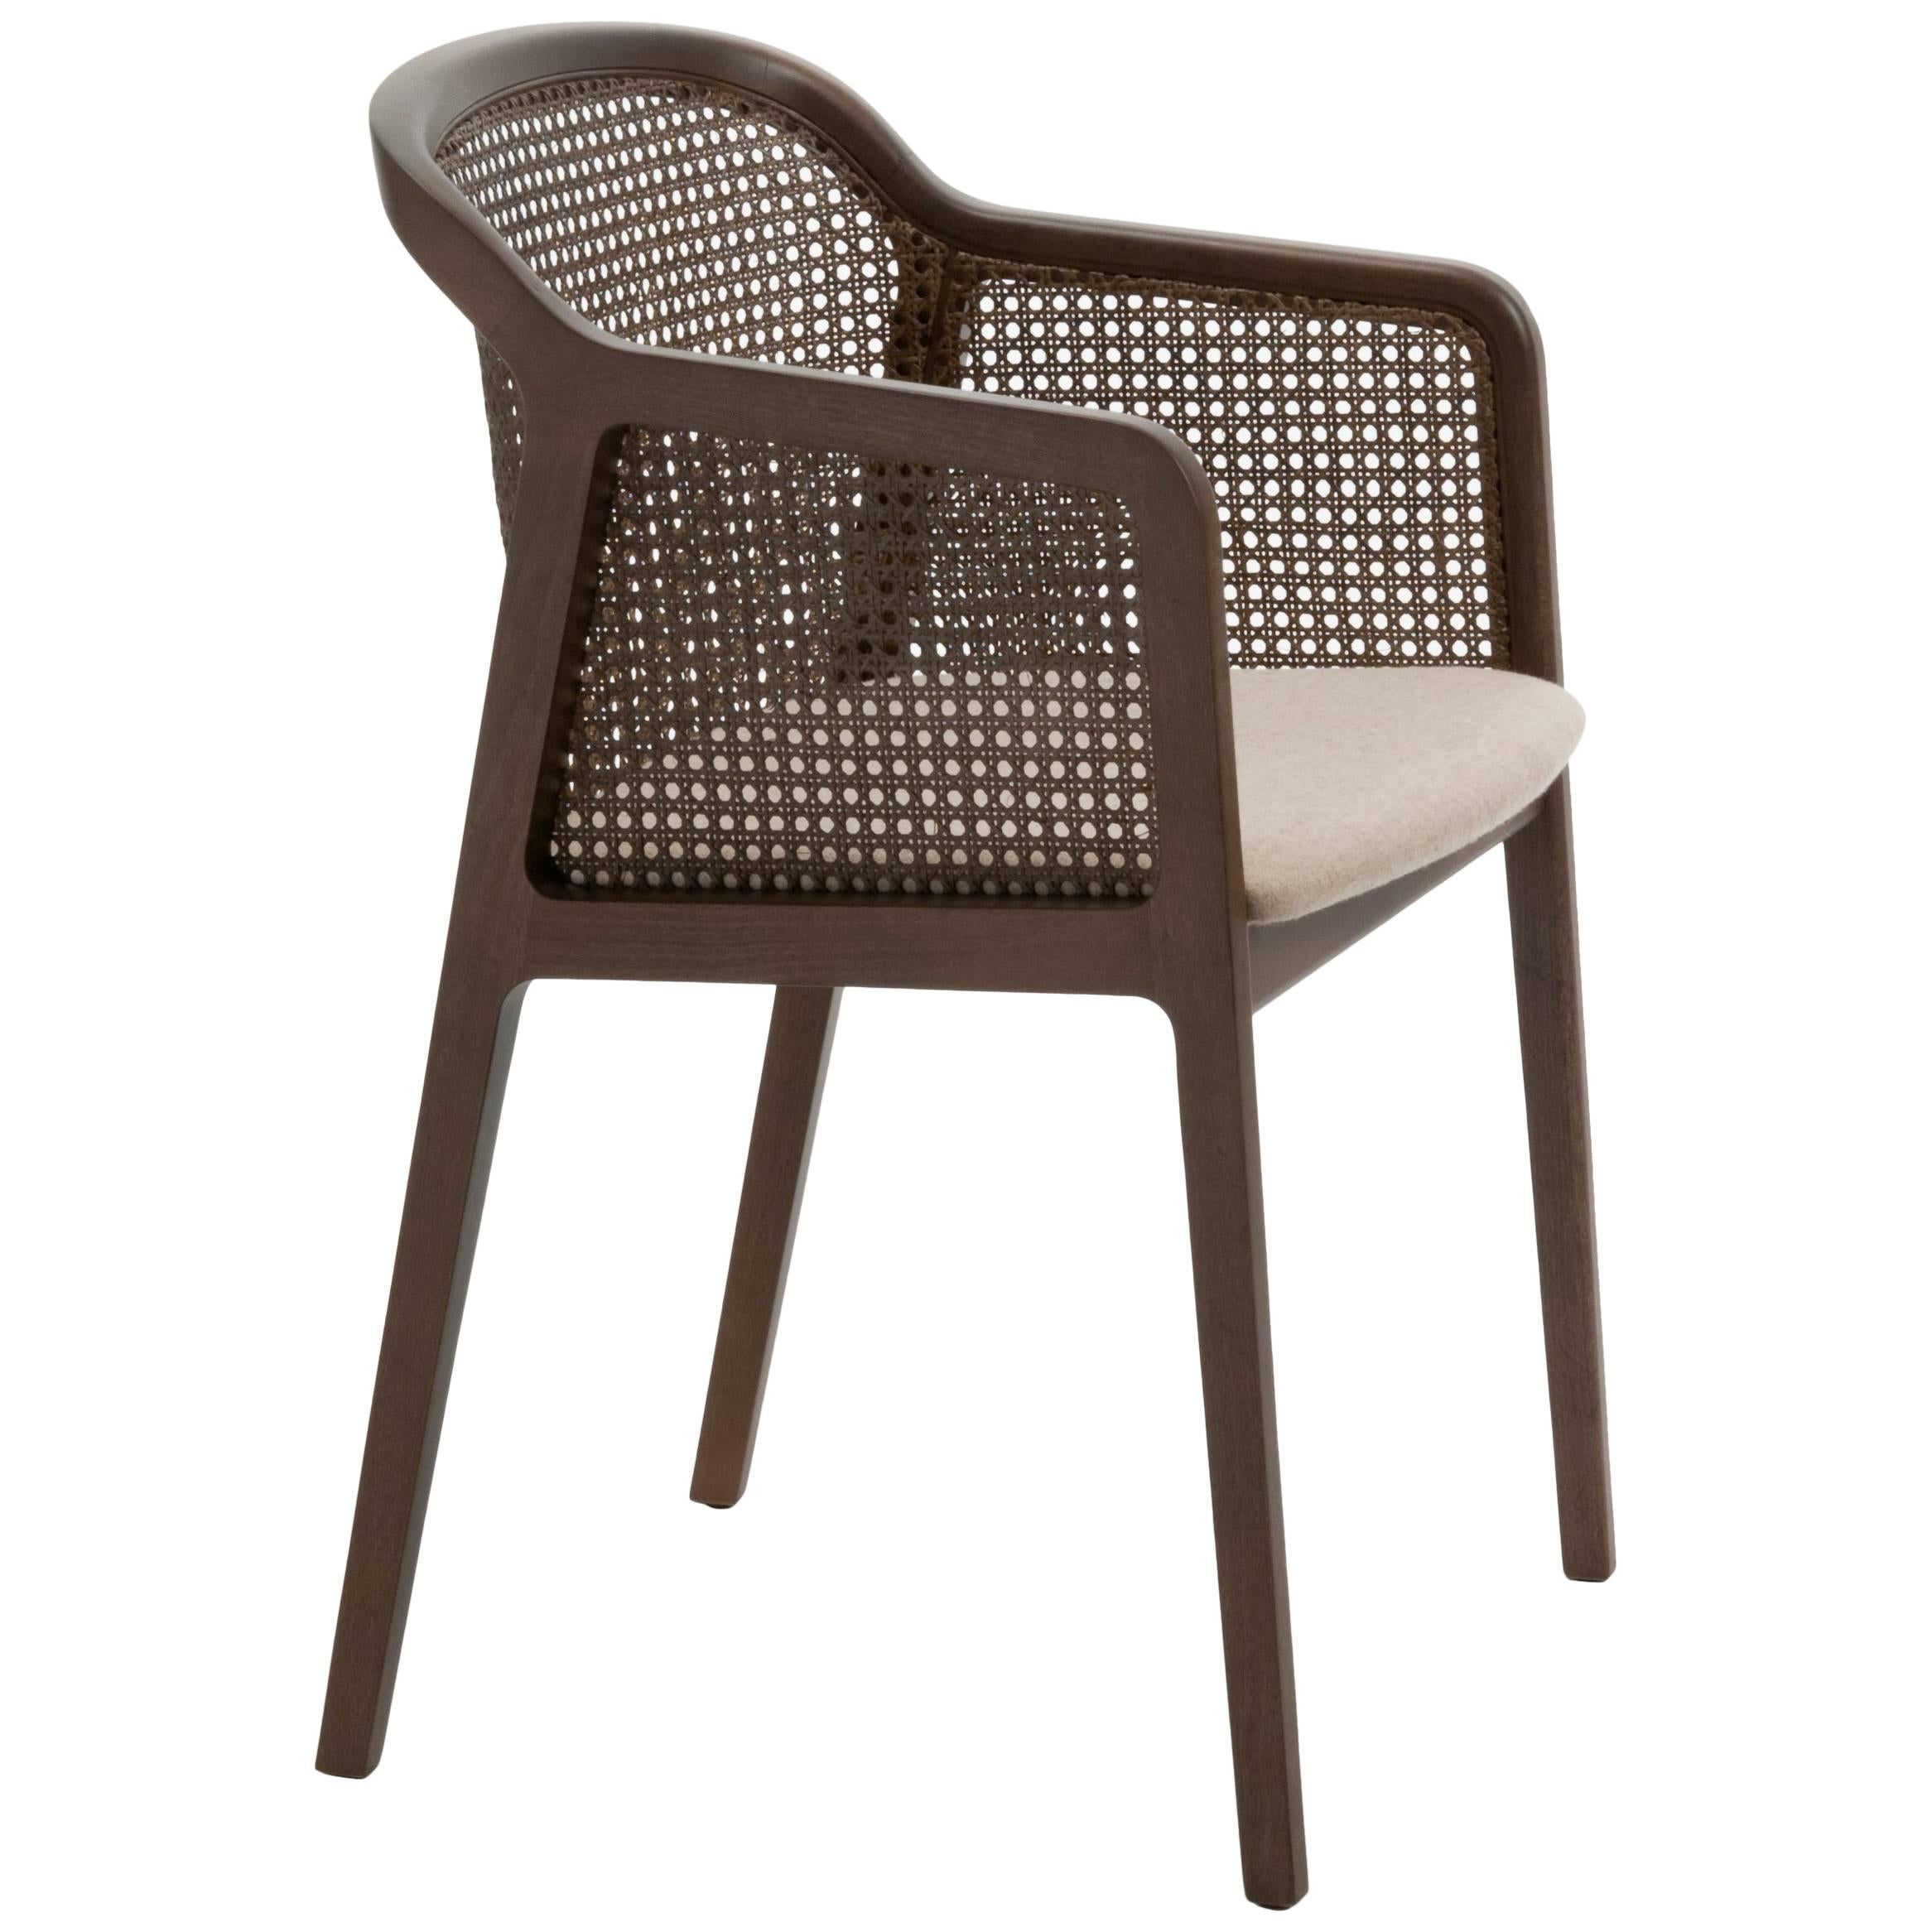 Vienna ist ein außergewöhnlich komfortabler und eleganter Sessel, entworfen von Emmanuel Gallina, der gerne Brancusi zitiert, wenn er sagt, dass 